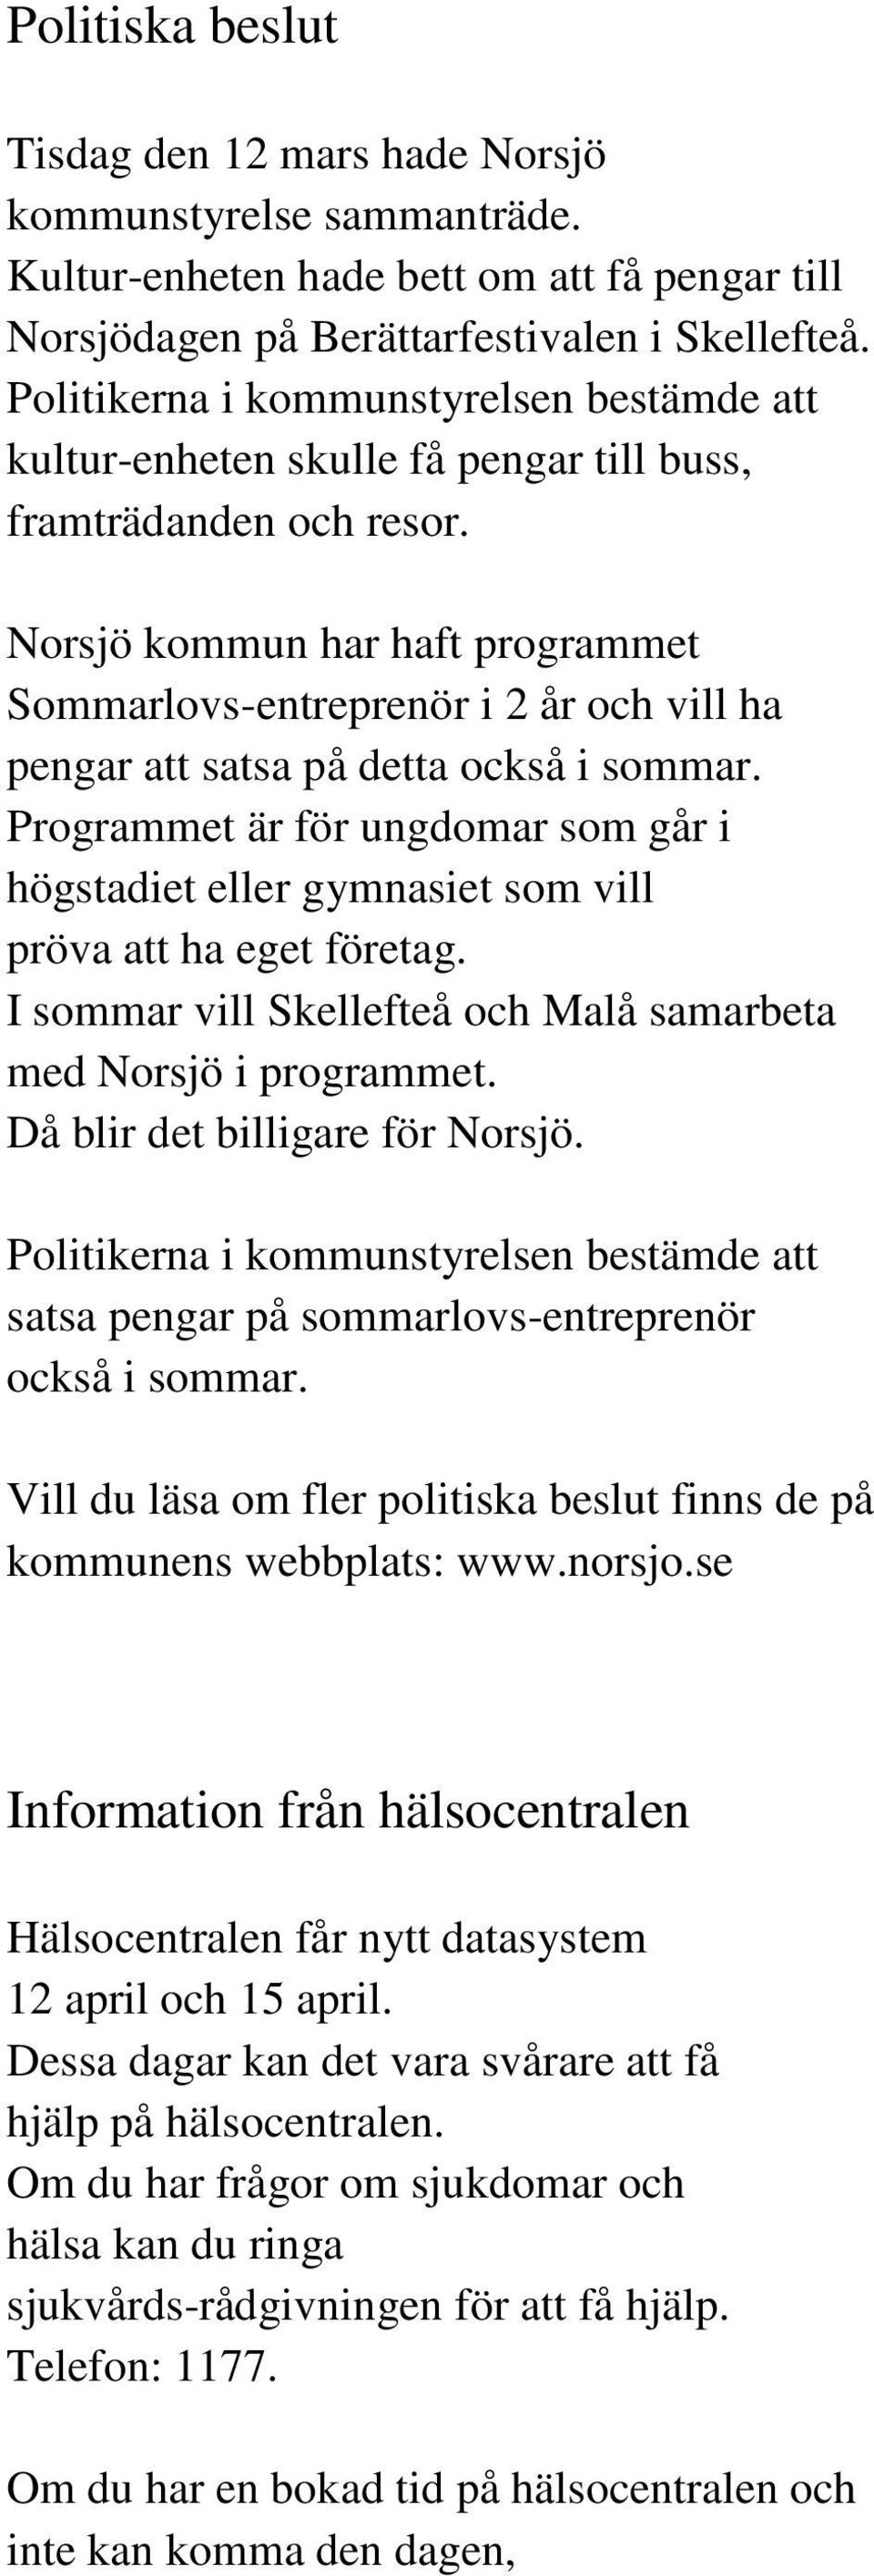 Norsjö kommun har haft programmet Sommarlovs-entreprenör i 2 år och vill ha pengar att satsa på detta också i sommar.